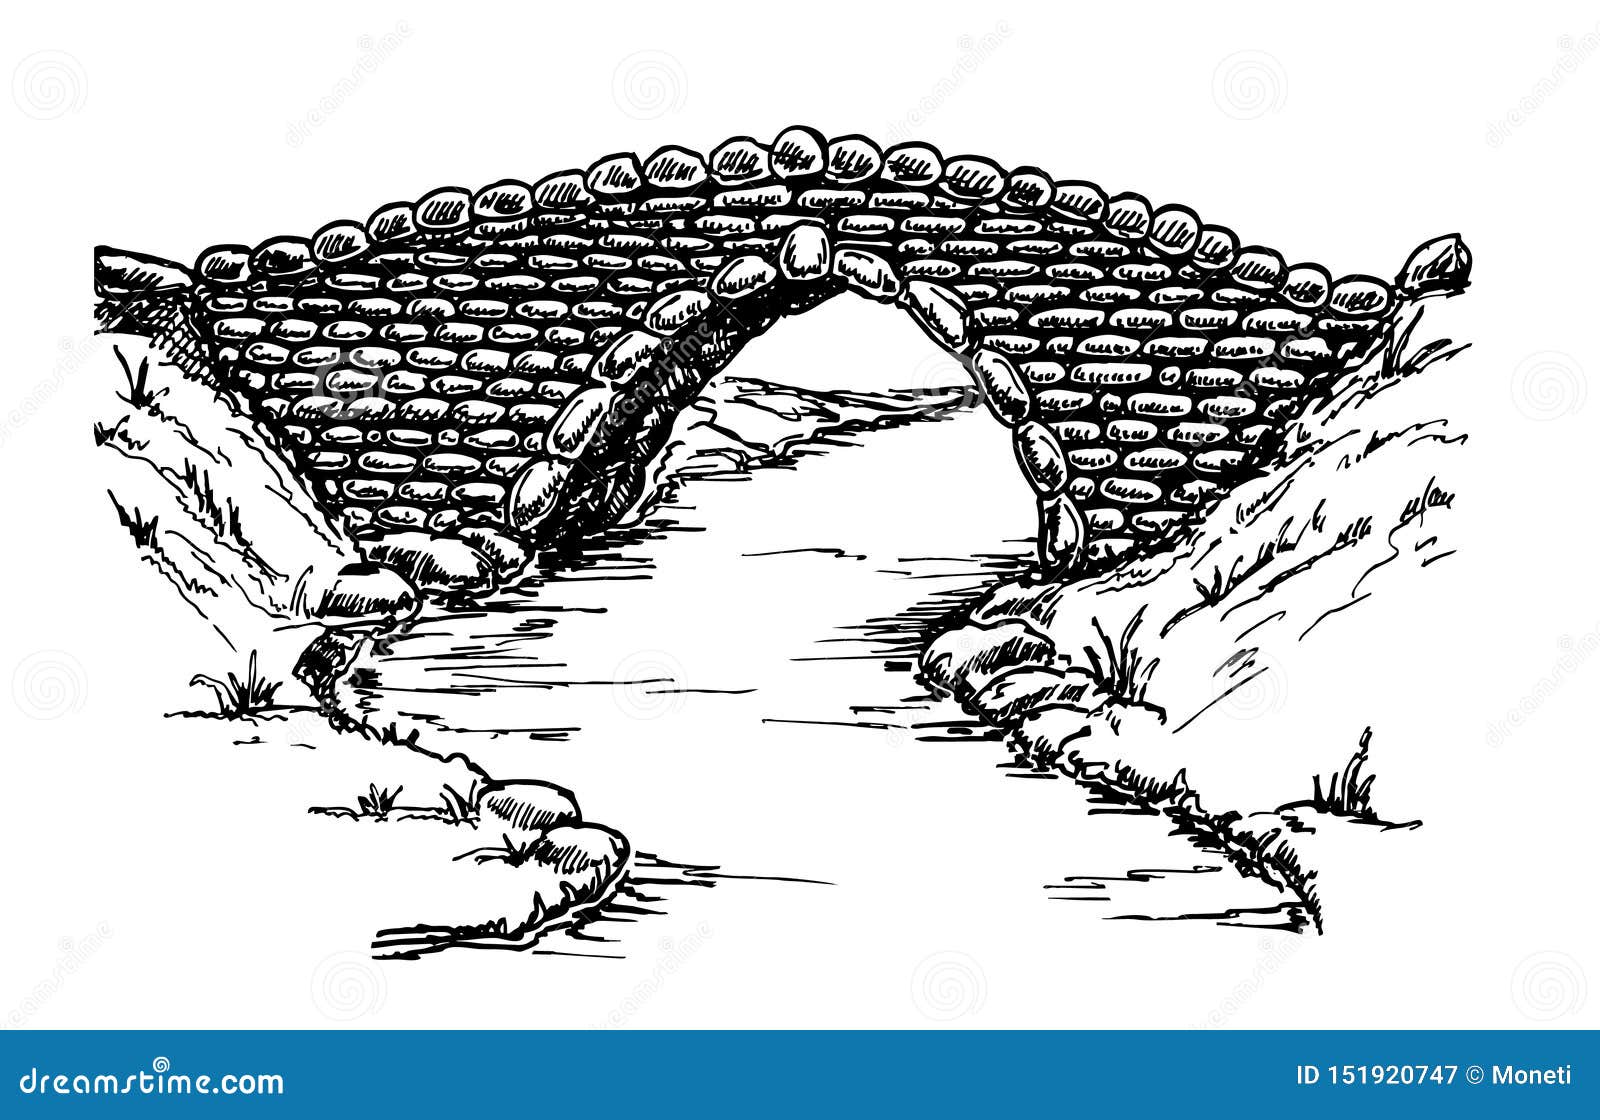 Мечтал провести подземный ход через пруд. Мост рисунок. Мост набросок. Каменный мост вектор. Эскиз мостика каменного.